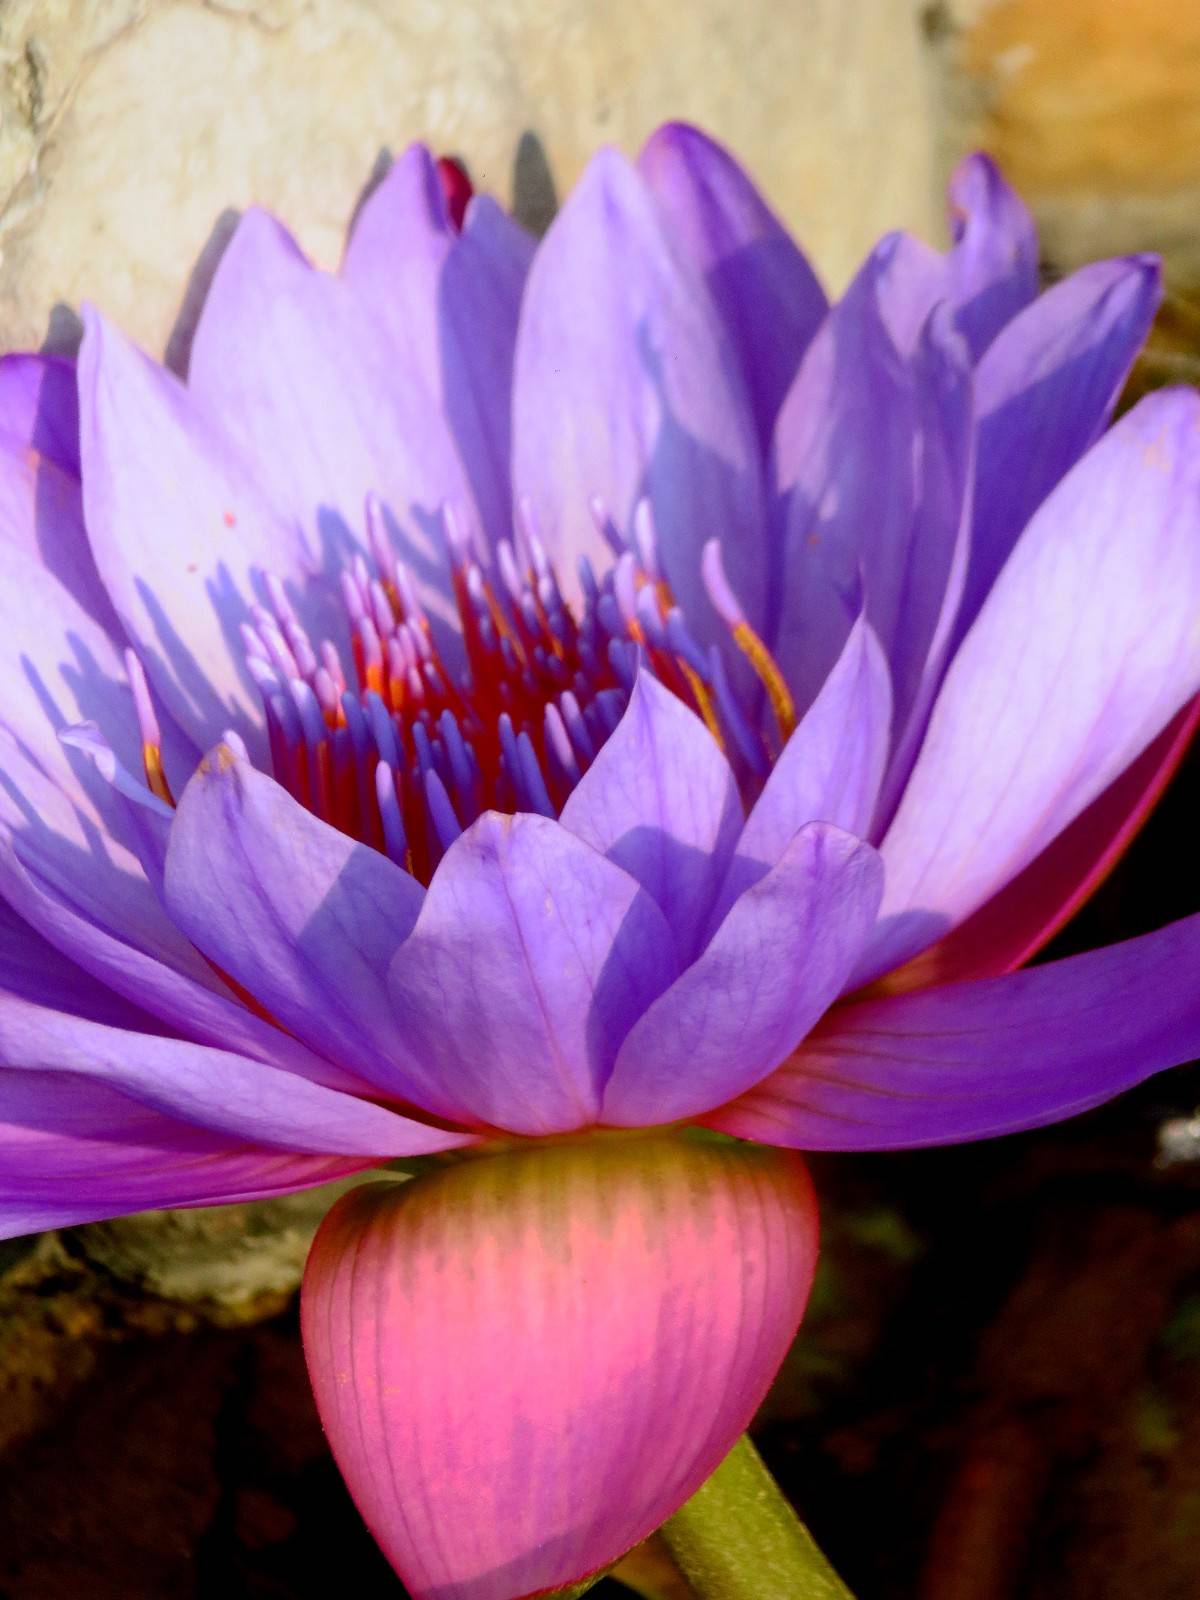 紫色睡莲比较罕见,非常抢眼,花语:梦幻,纯洁,好运